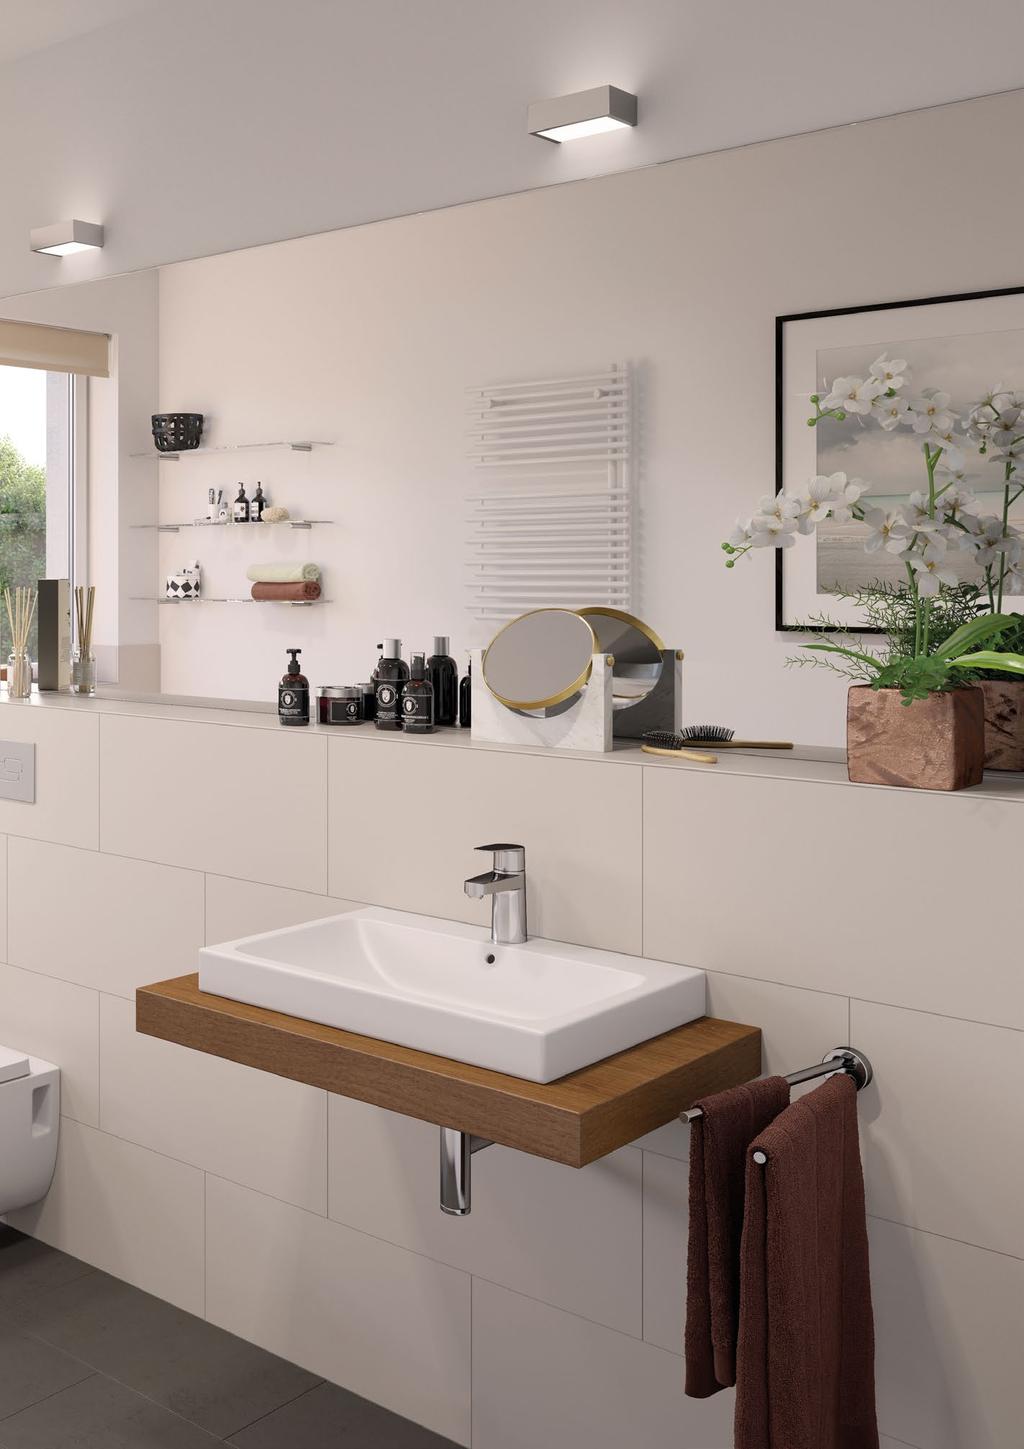 WOHNEN Inspirierte Lebensart Die Badezimmer sind je nach Größe mit exklusiven Wannen u nd /oder großen, verglasten Duschkabinen ausgestattet.